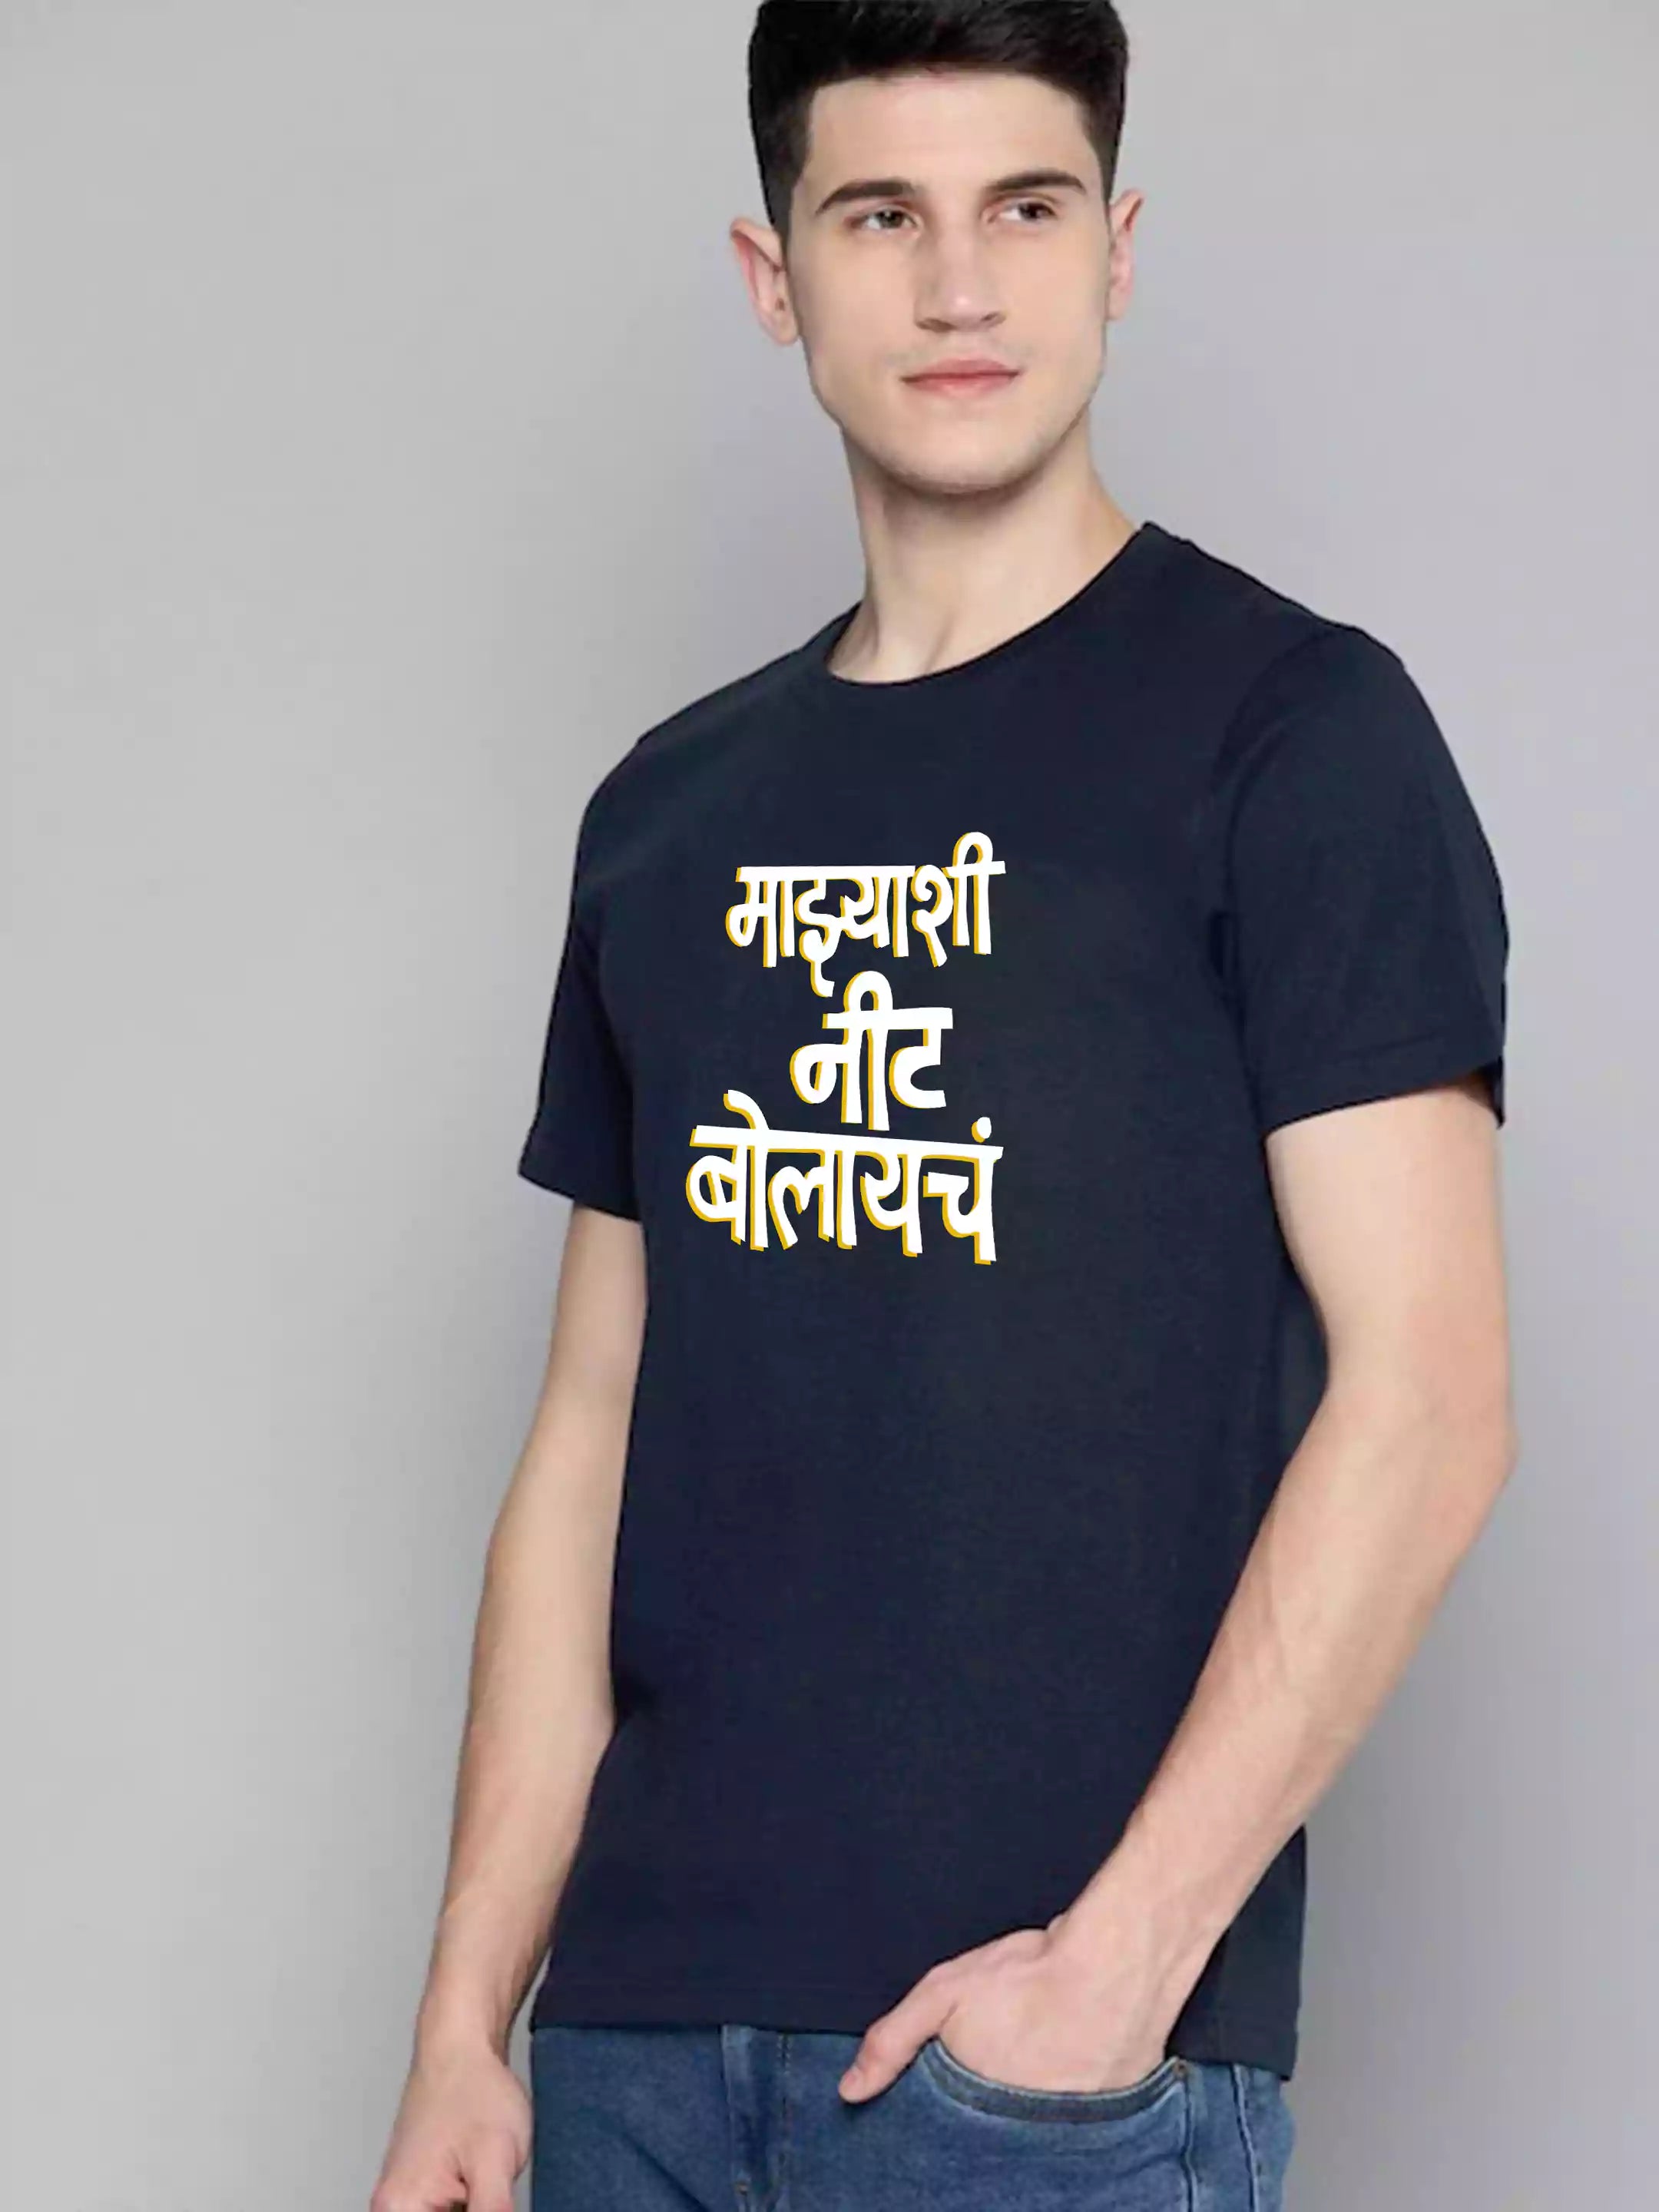 Nit Bolaycha - Sukhiaatma Unisex Marathi Graphic Printed Navy Blue T-shirt